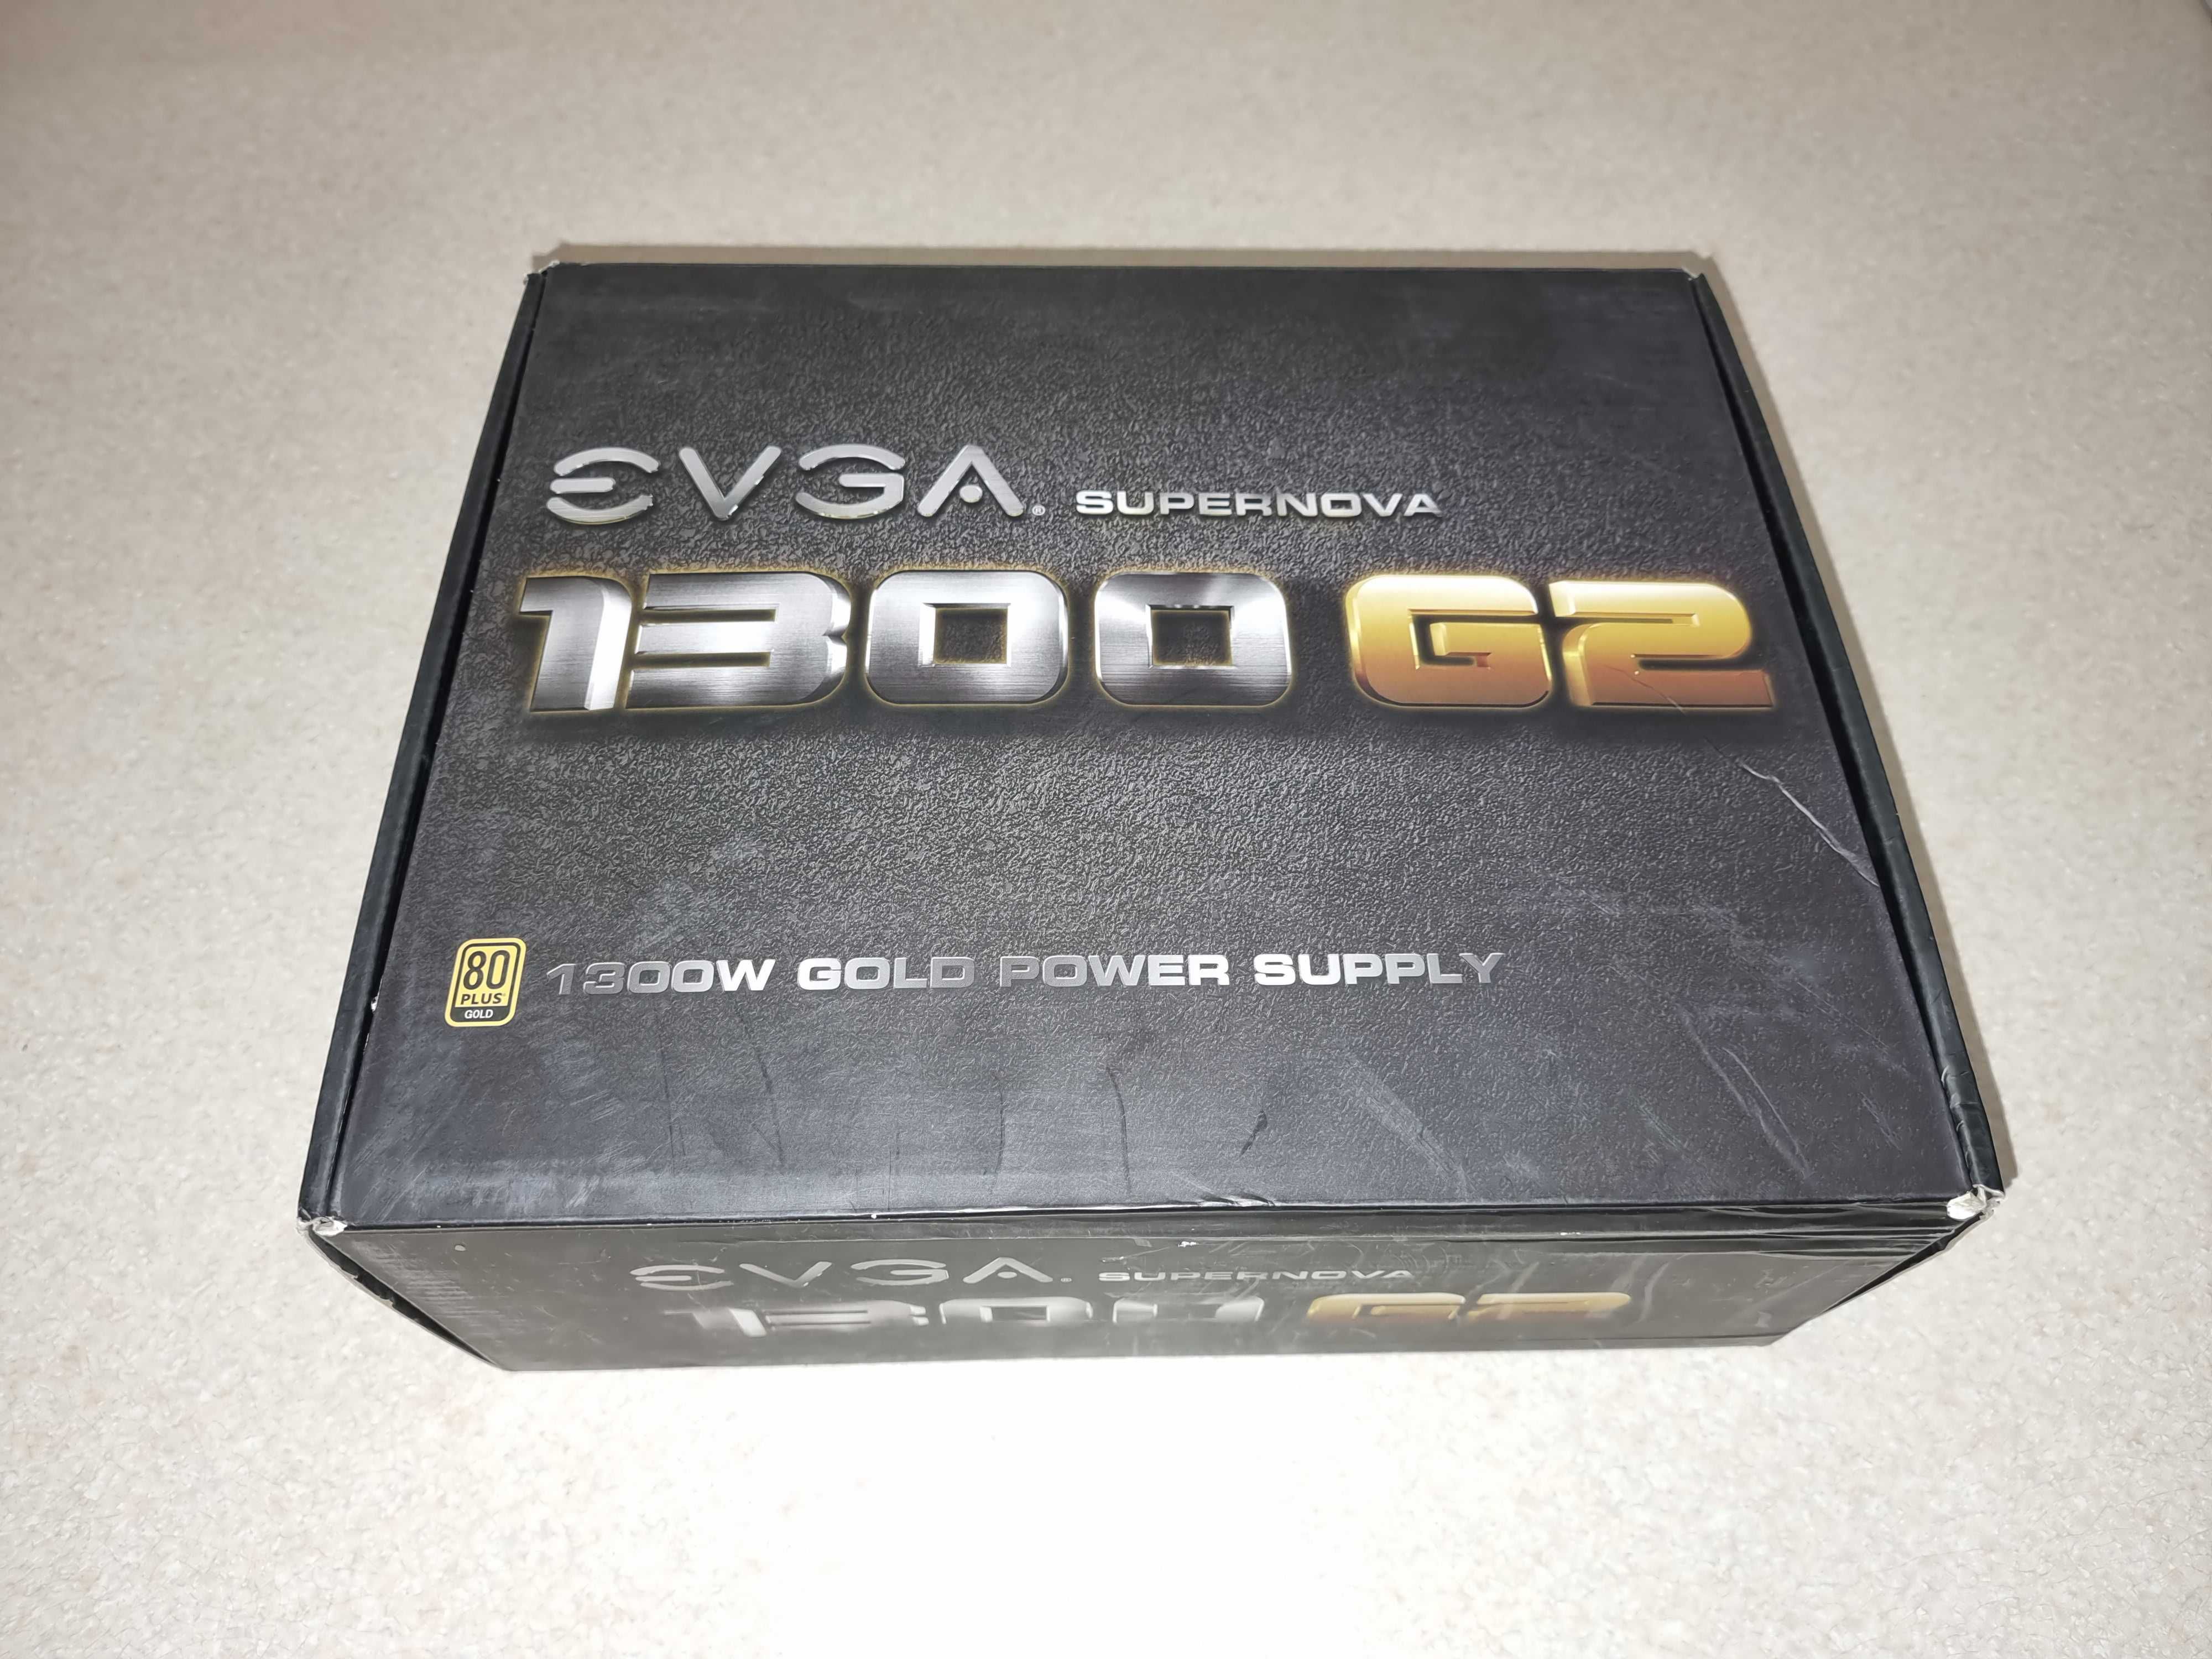 Золотой блок питания EVGA Supernova 1300 G2 мощностью 1300Вт